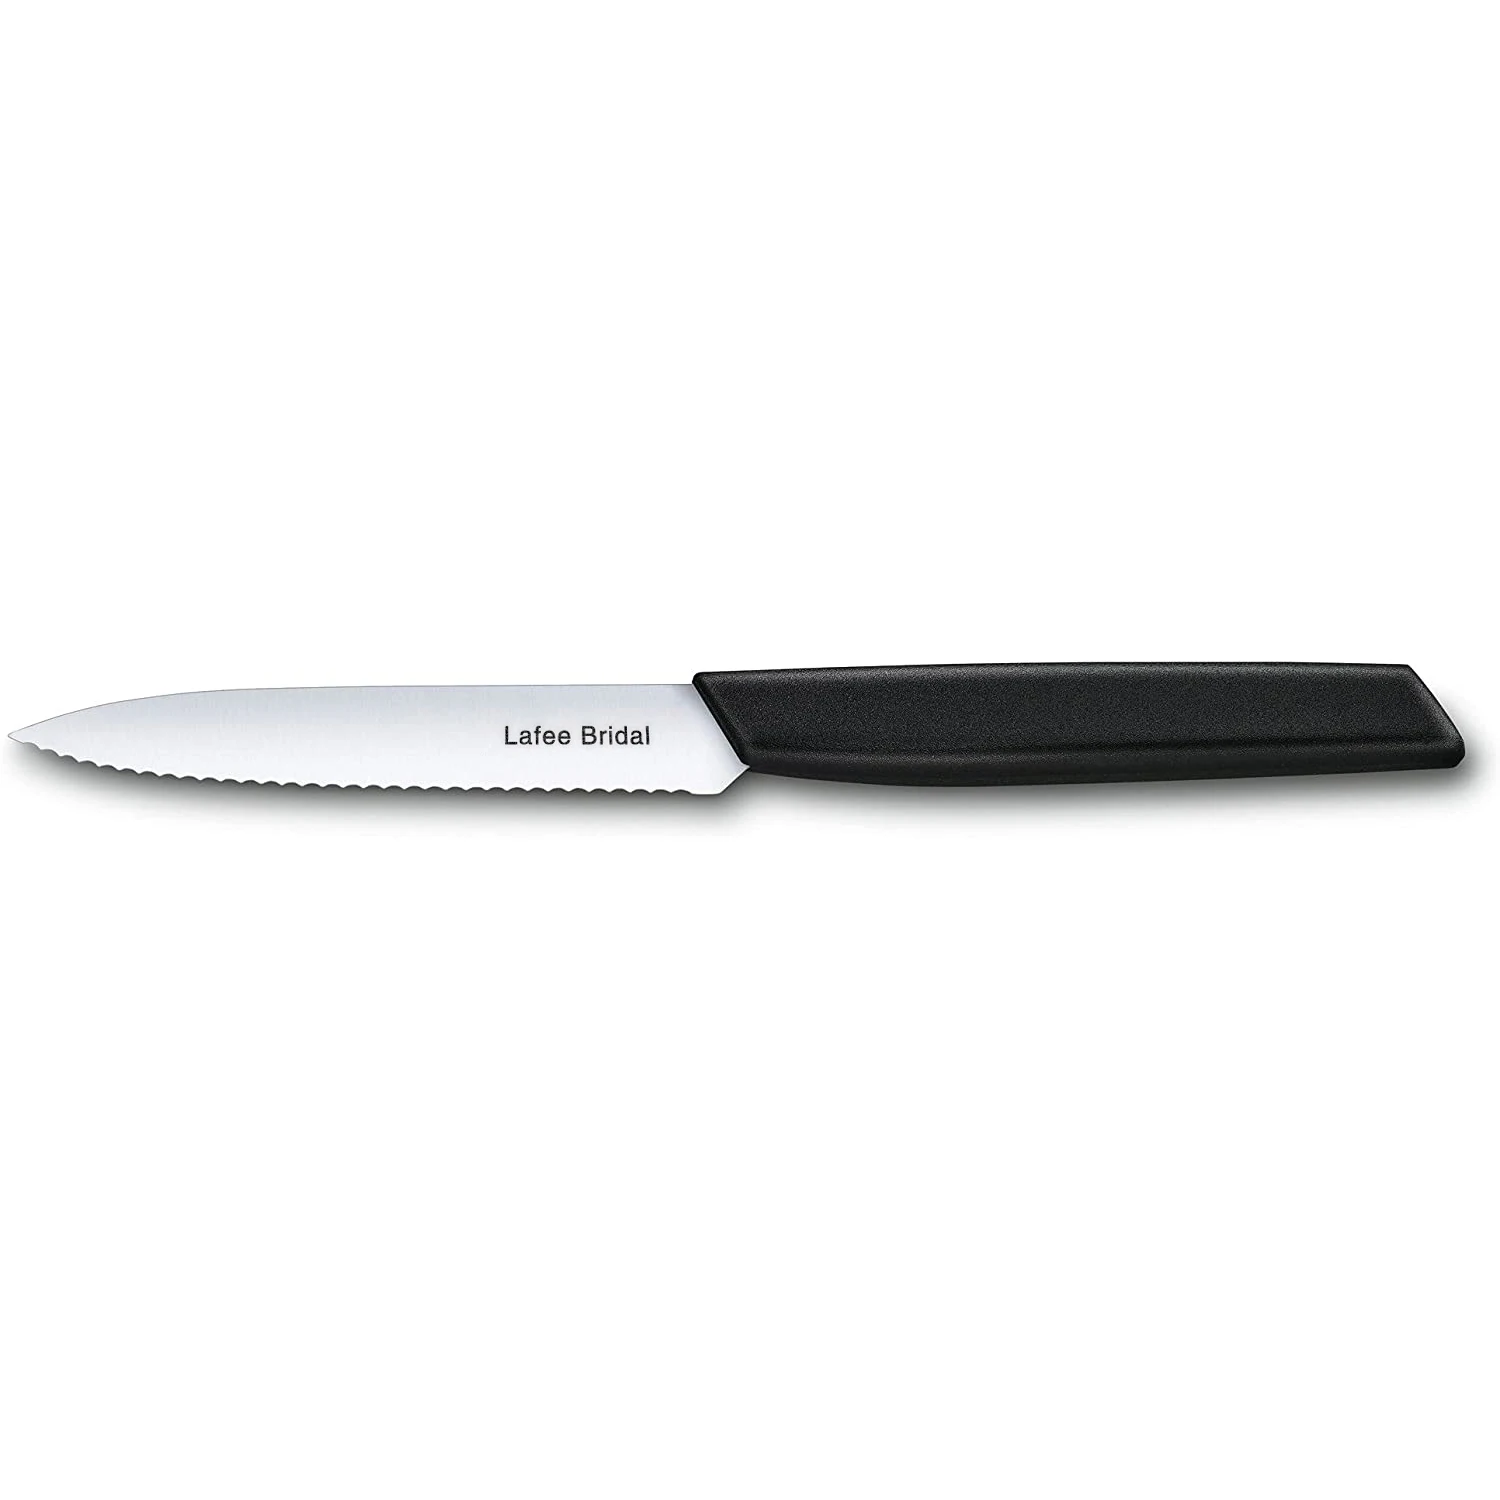 Lafee Vjenčanje Voćni noževi Novi Moderni 3,9-inčni kvalitetan Nož Crne boje